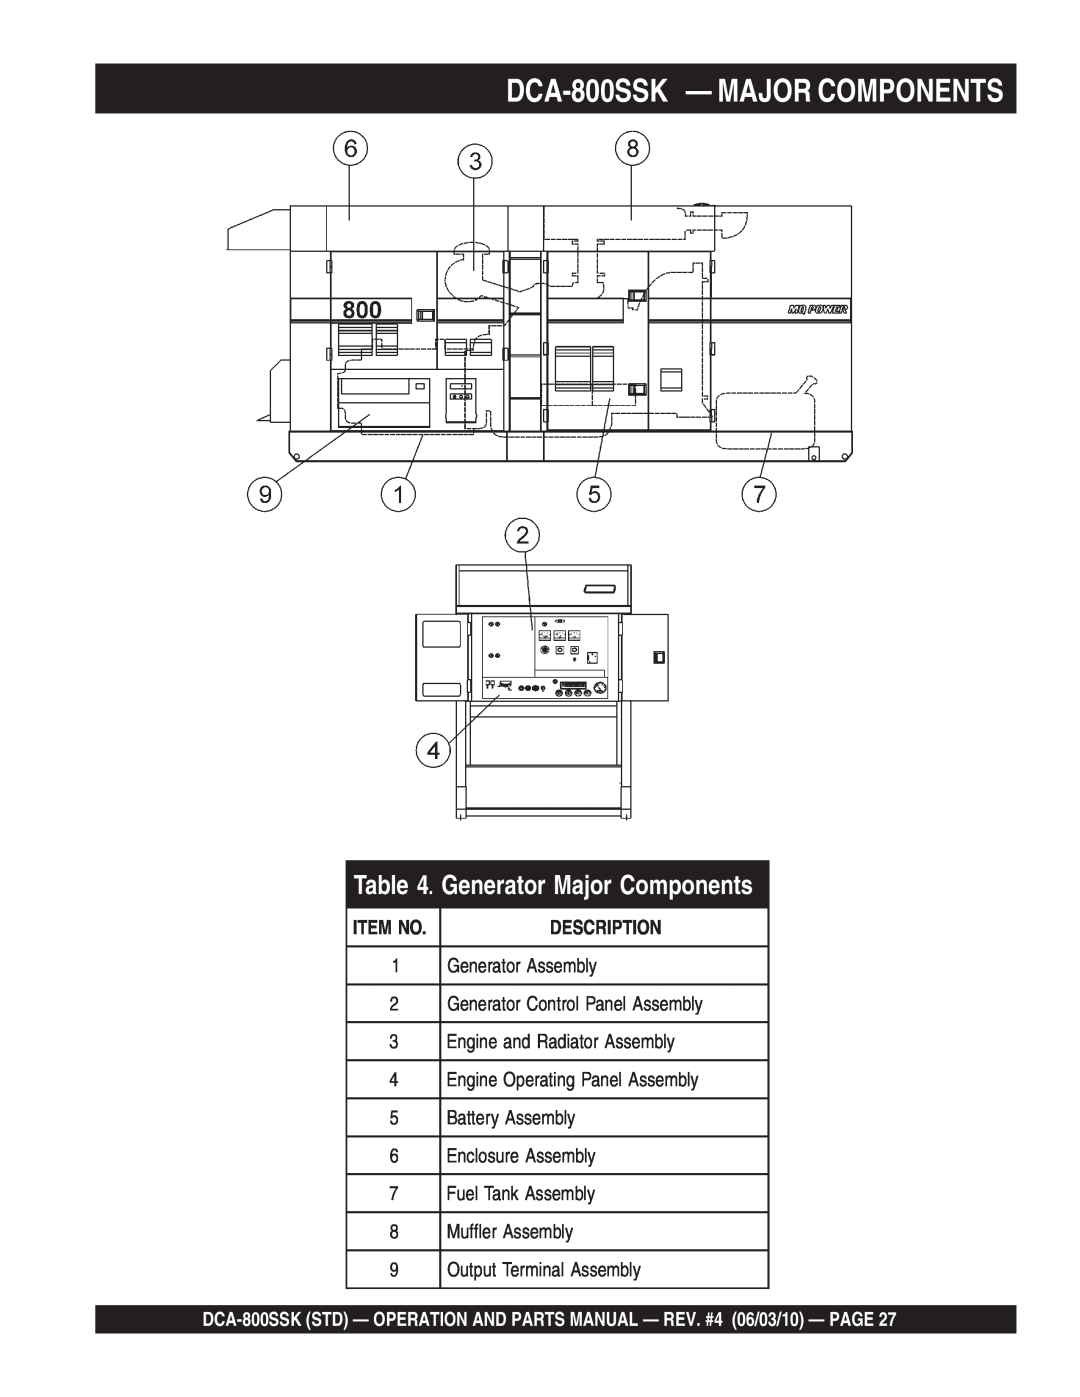 Multiquip operation manual DCA-800SSK - MAJOR COMPONENTS, Generator Major Components, Description, Item No 